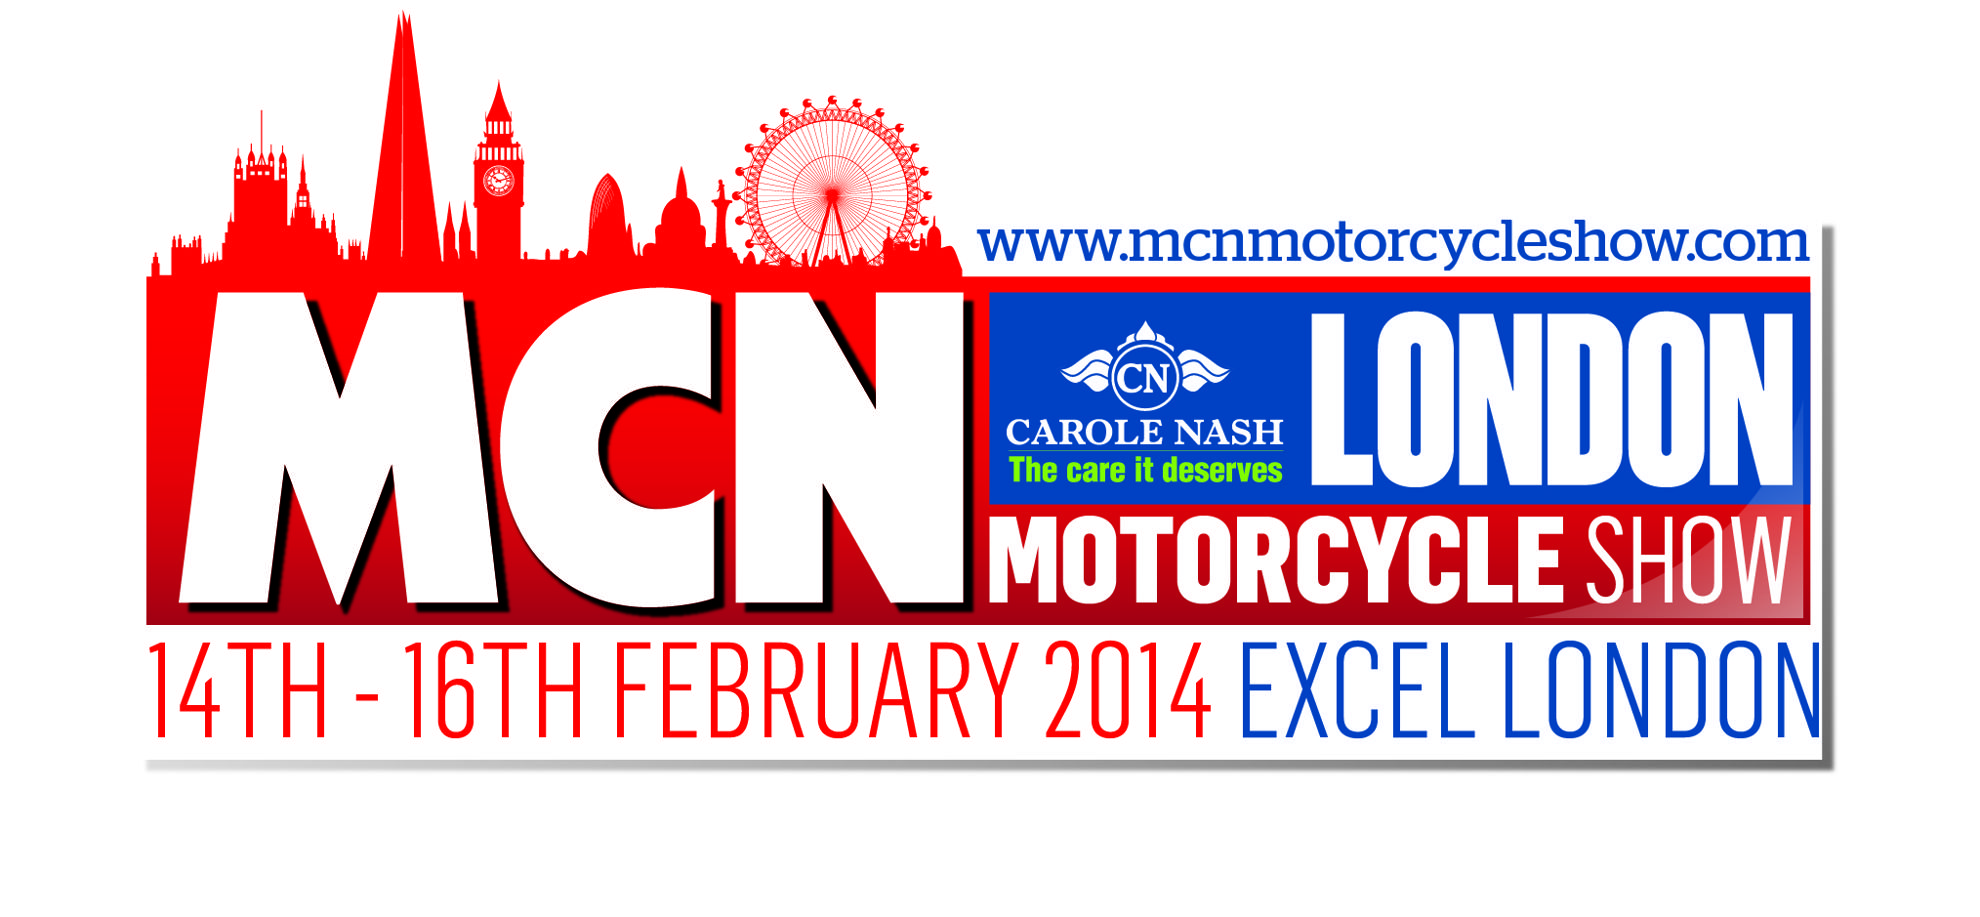 MCN LONDON MOTORCYCLE SHOW – Honda Motorcycles